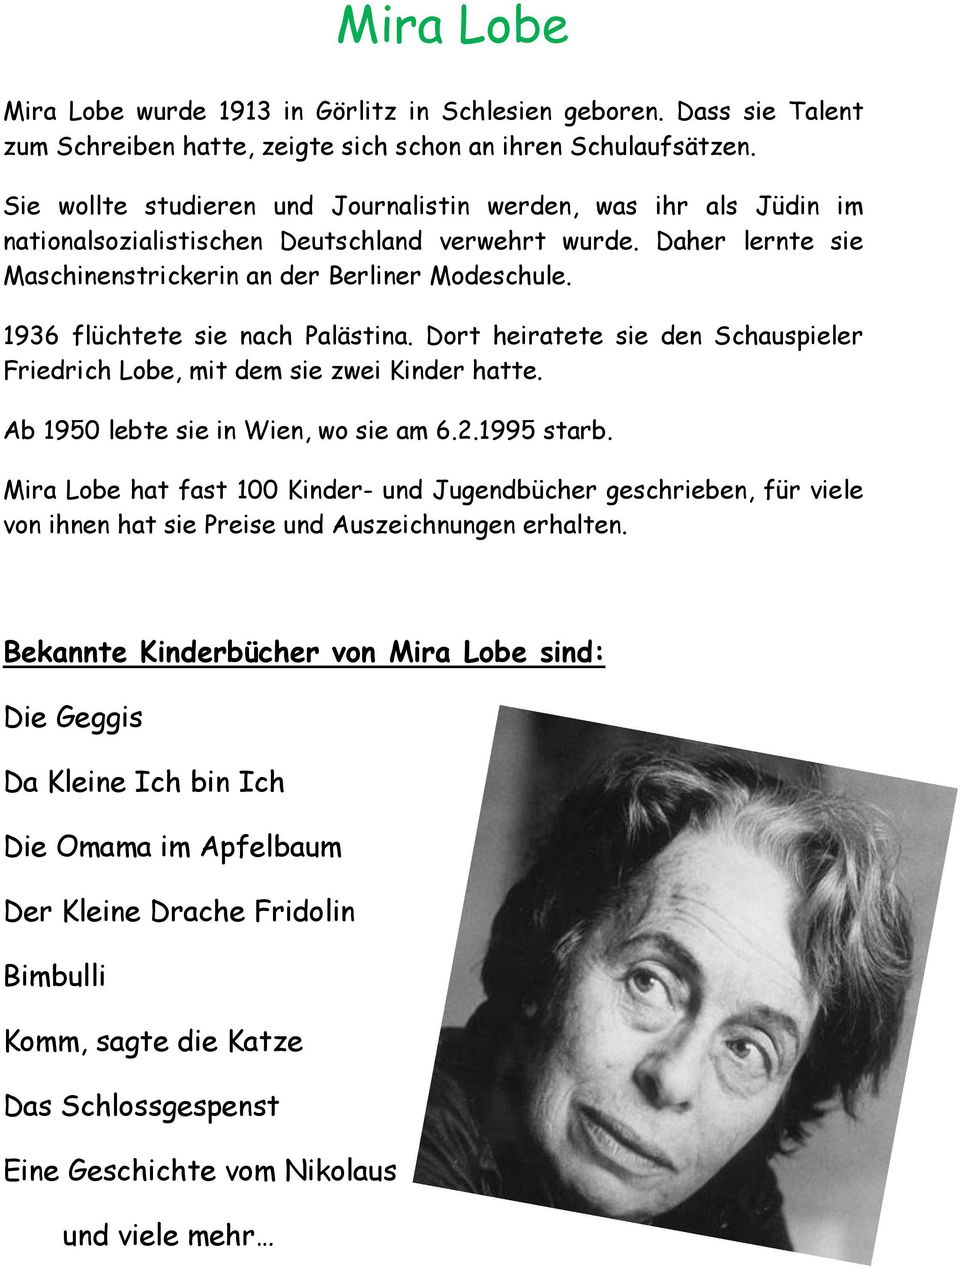 1936 flüchtete sie nach Palästina. Dort heiratete sie den Schauspieler Friedrich Lobe, mit dem sie zwei Kinder hatte. Ab 1950 lebte sie in Wien, wo sie am 6.2.1995 starb.